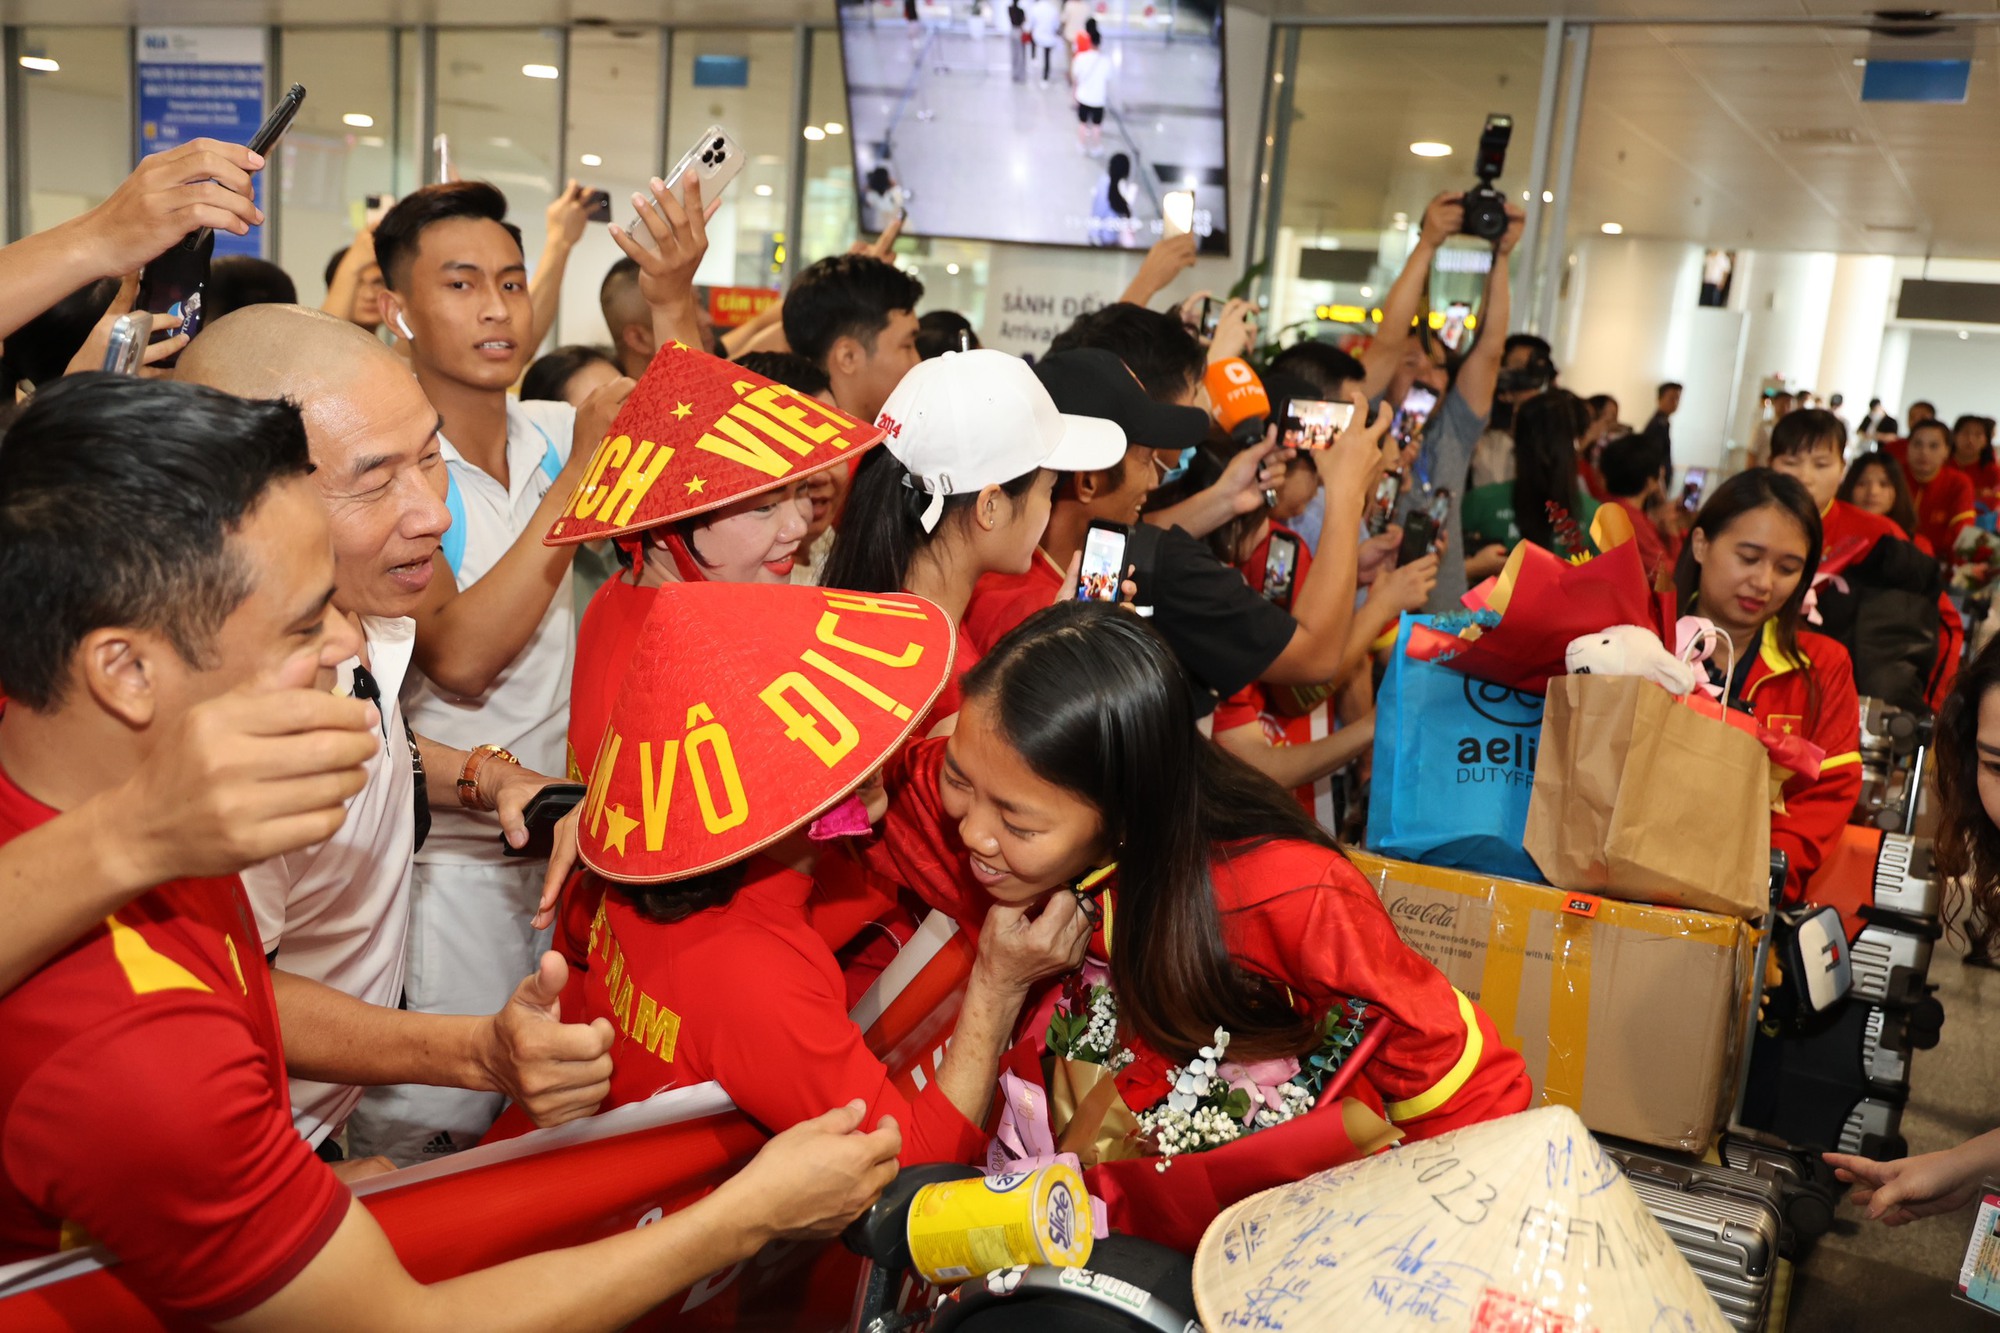 HLV Mai Đức Chung cùng nữ tuyển thủ rạng ngời trở về sau hành trình World Cup lịch sử - Ảnh 7.